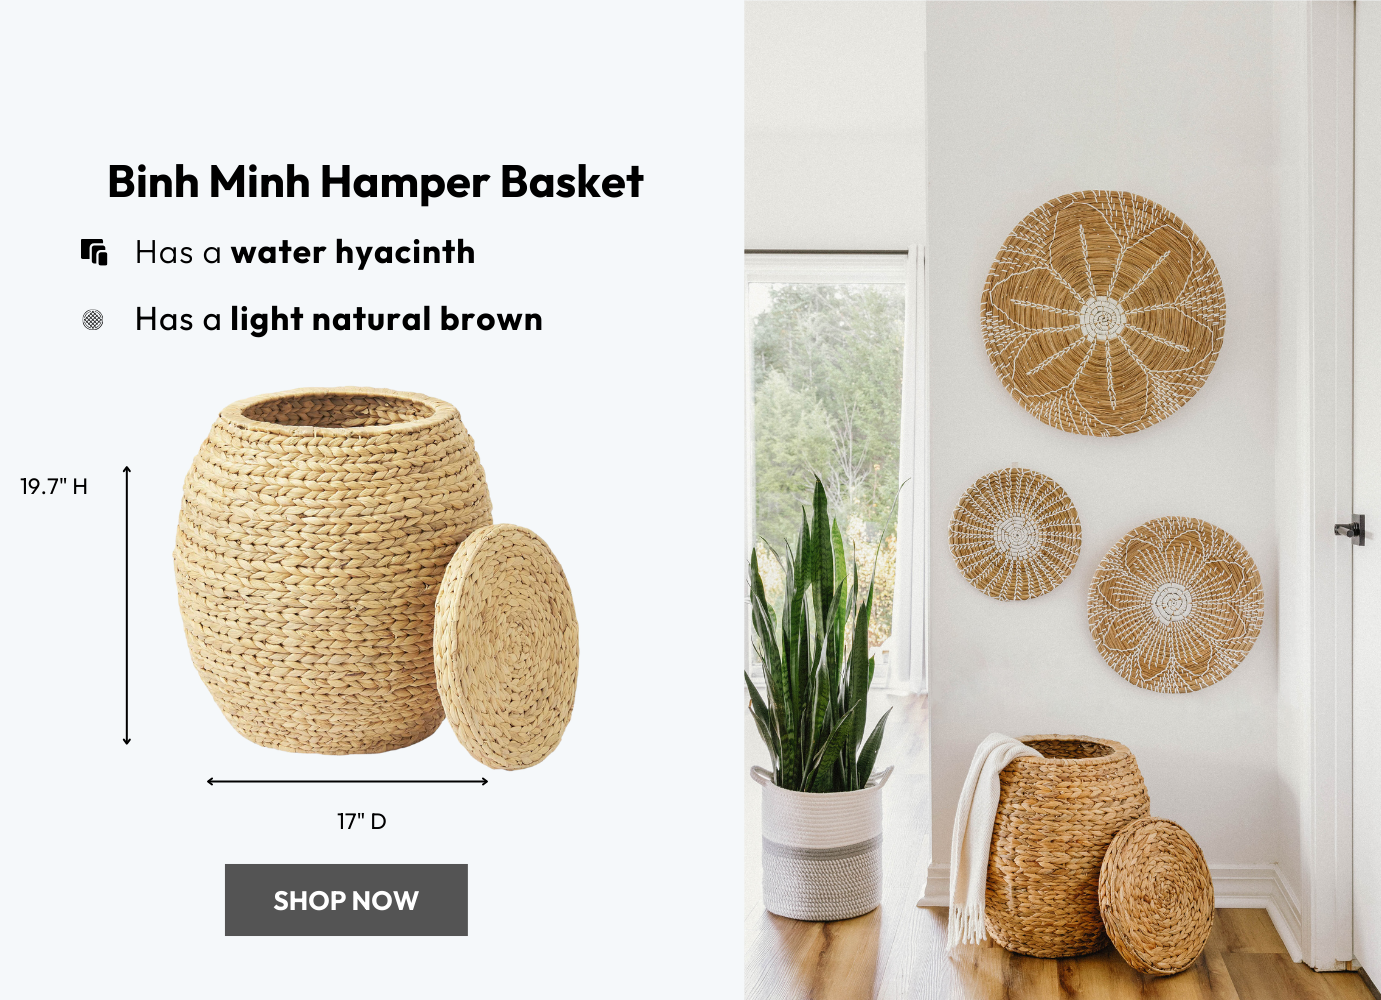 Binh Minh Hamper Basket